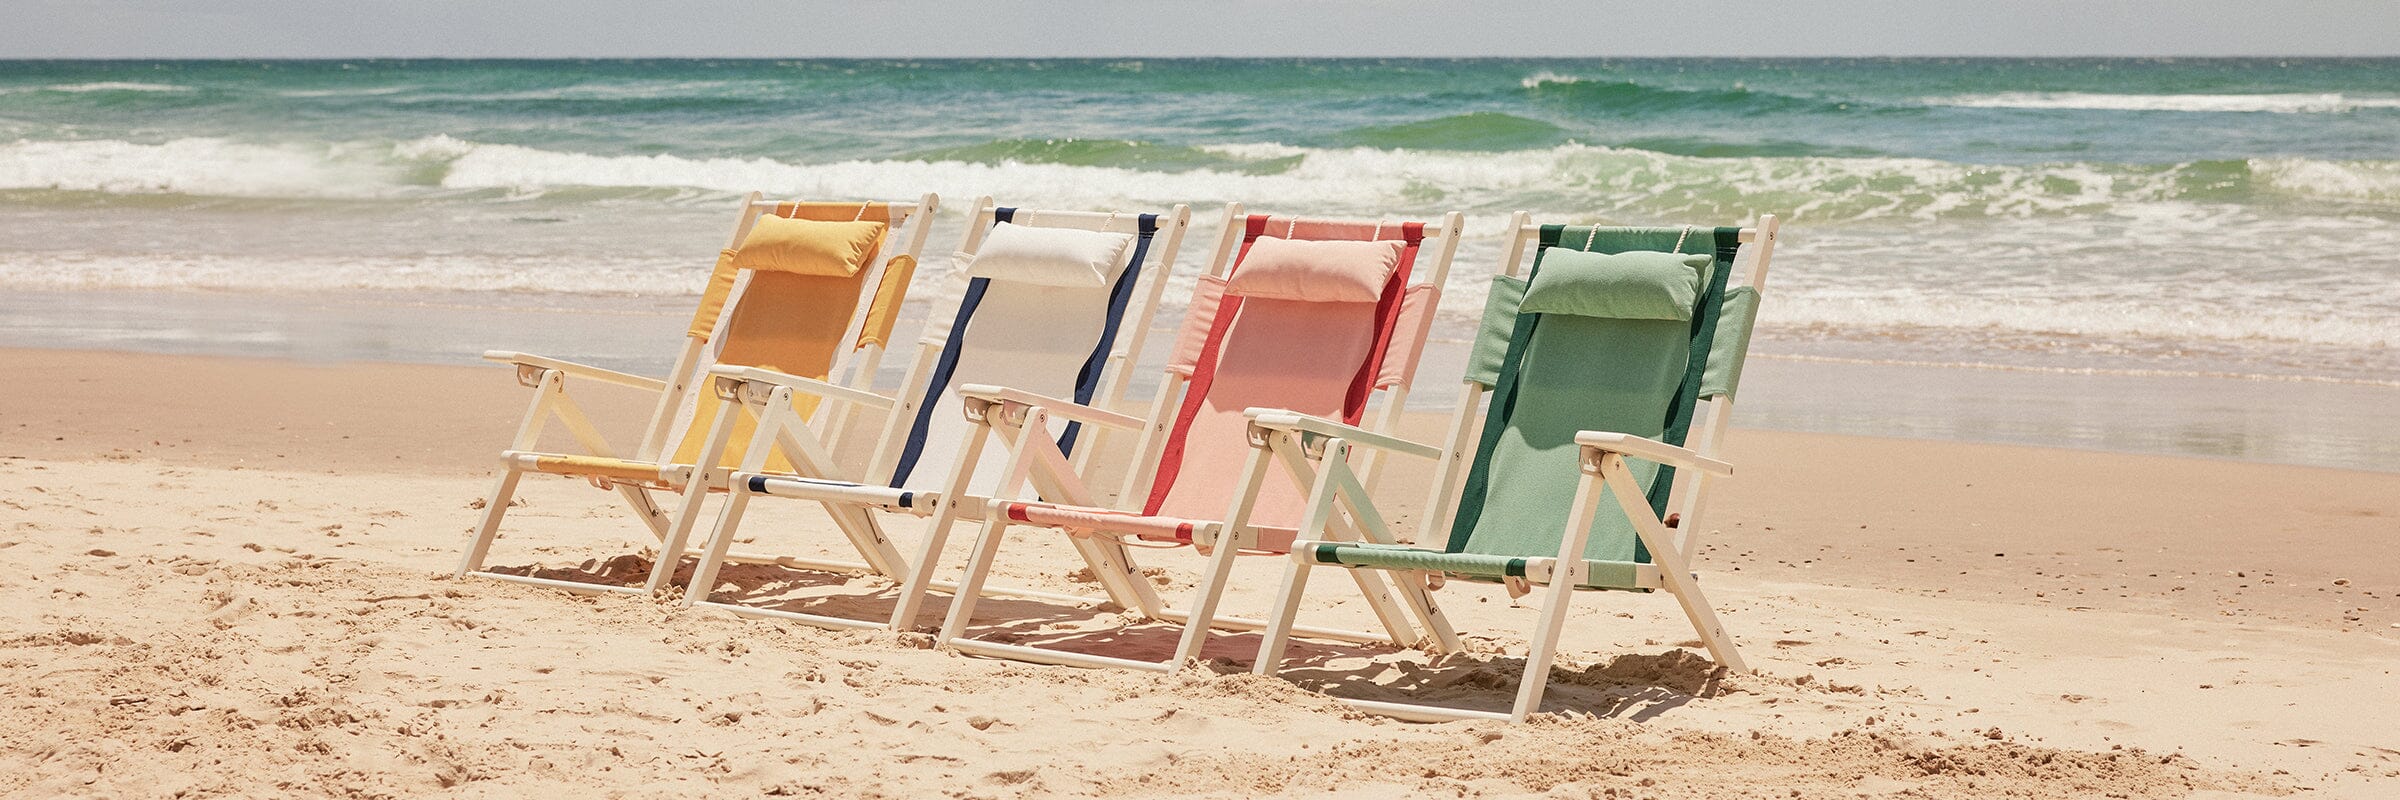 All Beach Chairs